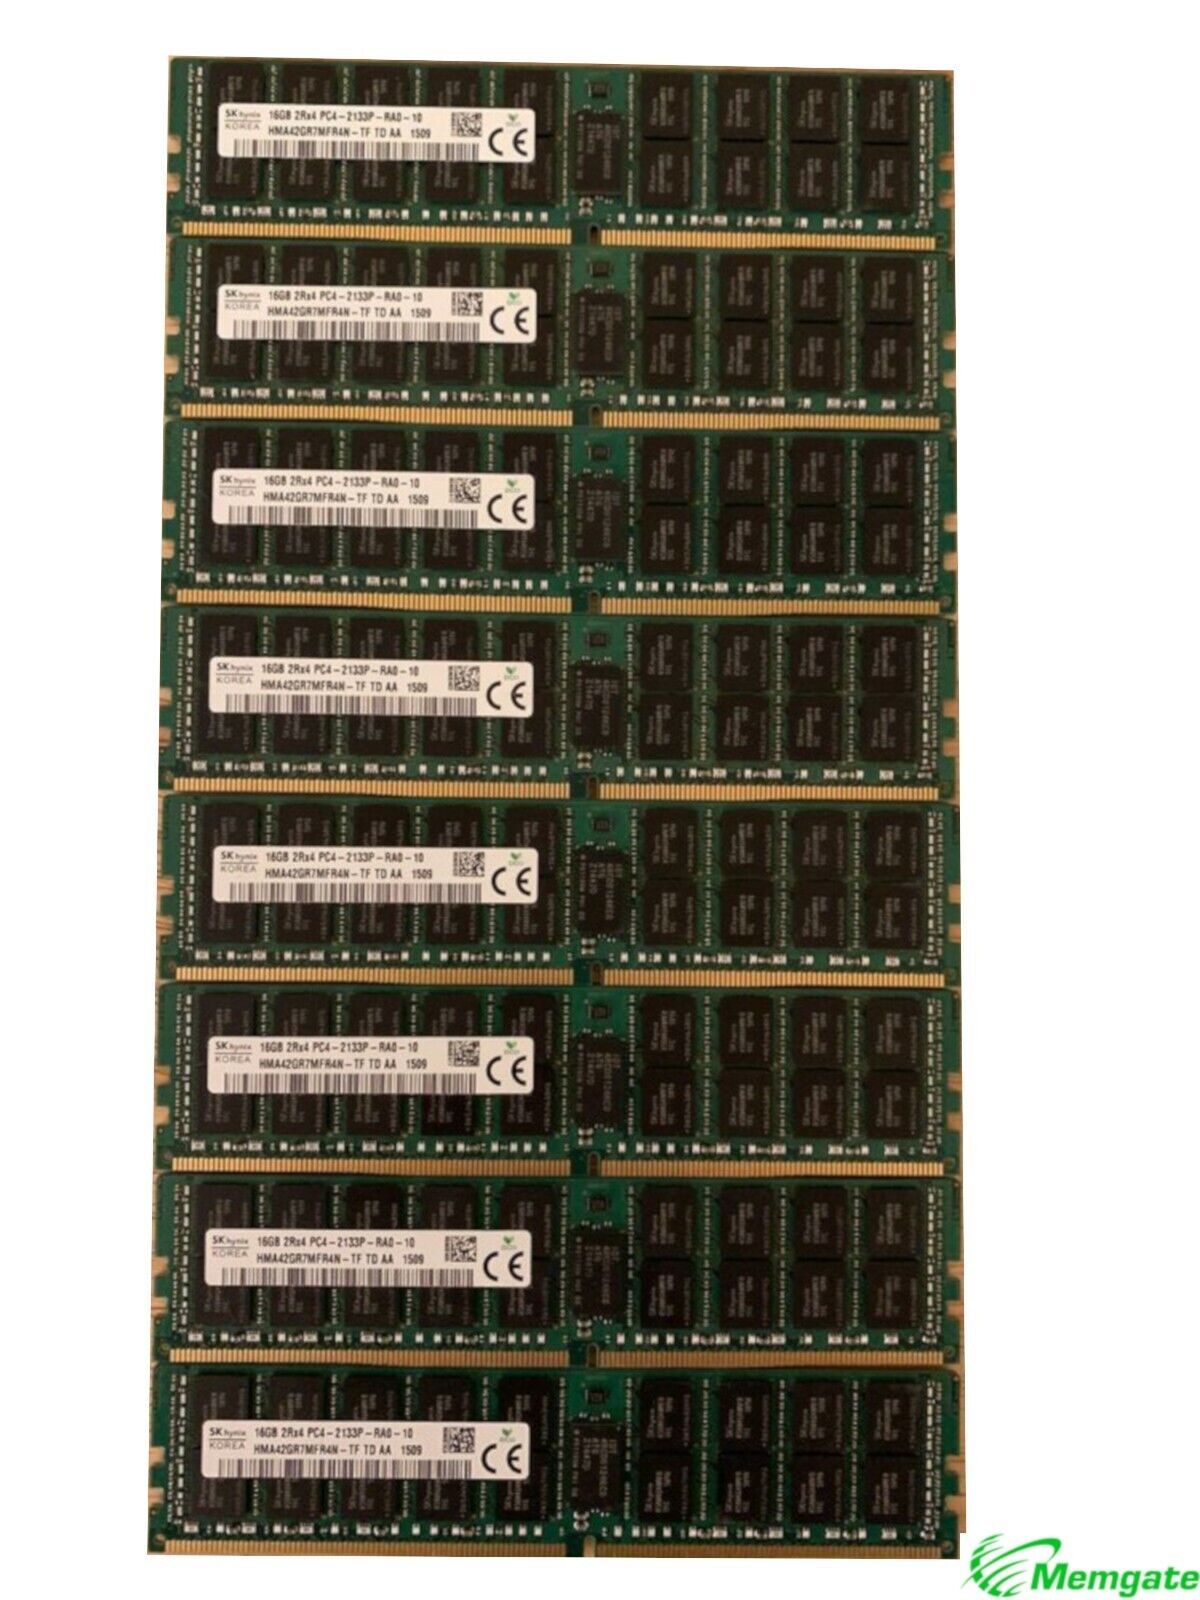 192GB (12x16GB) PC4-17000P-R DDR4 2133P ECC RDIMM Memory for Dell PowerEdge T630